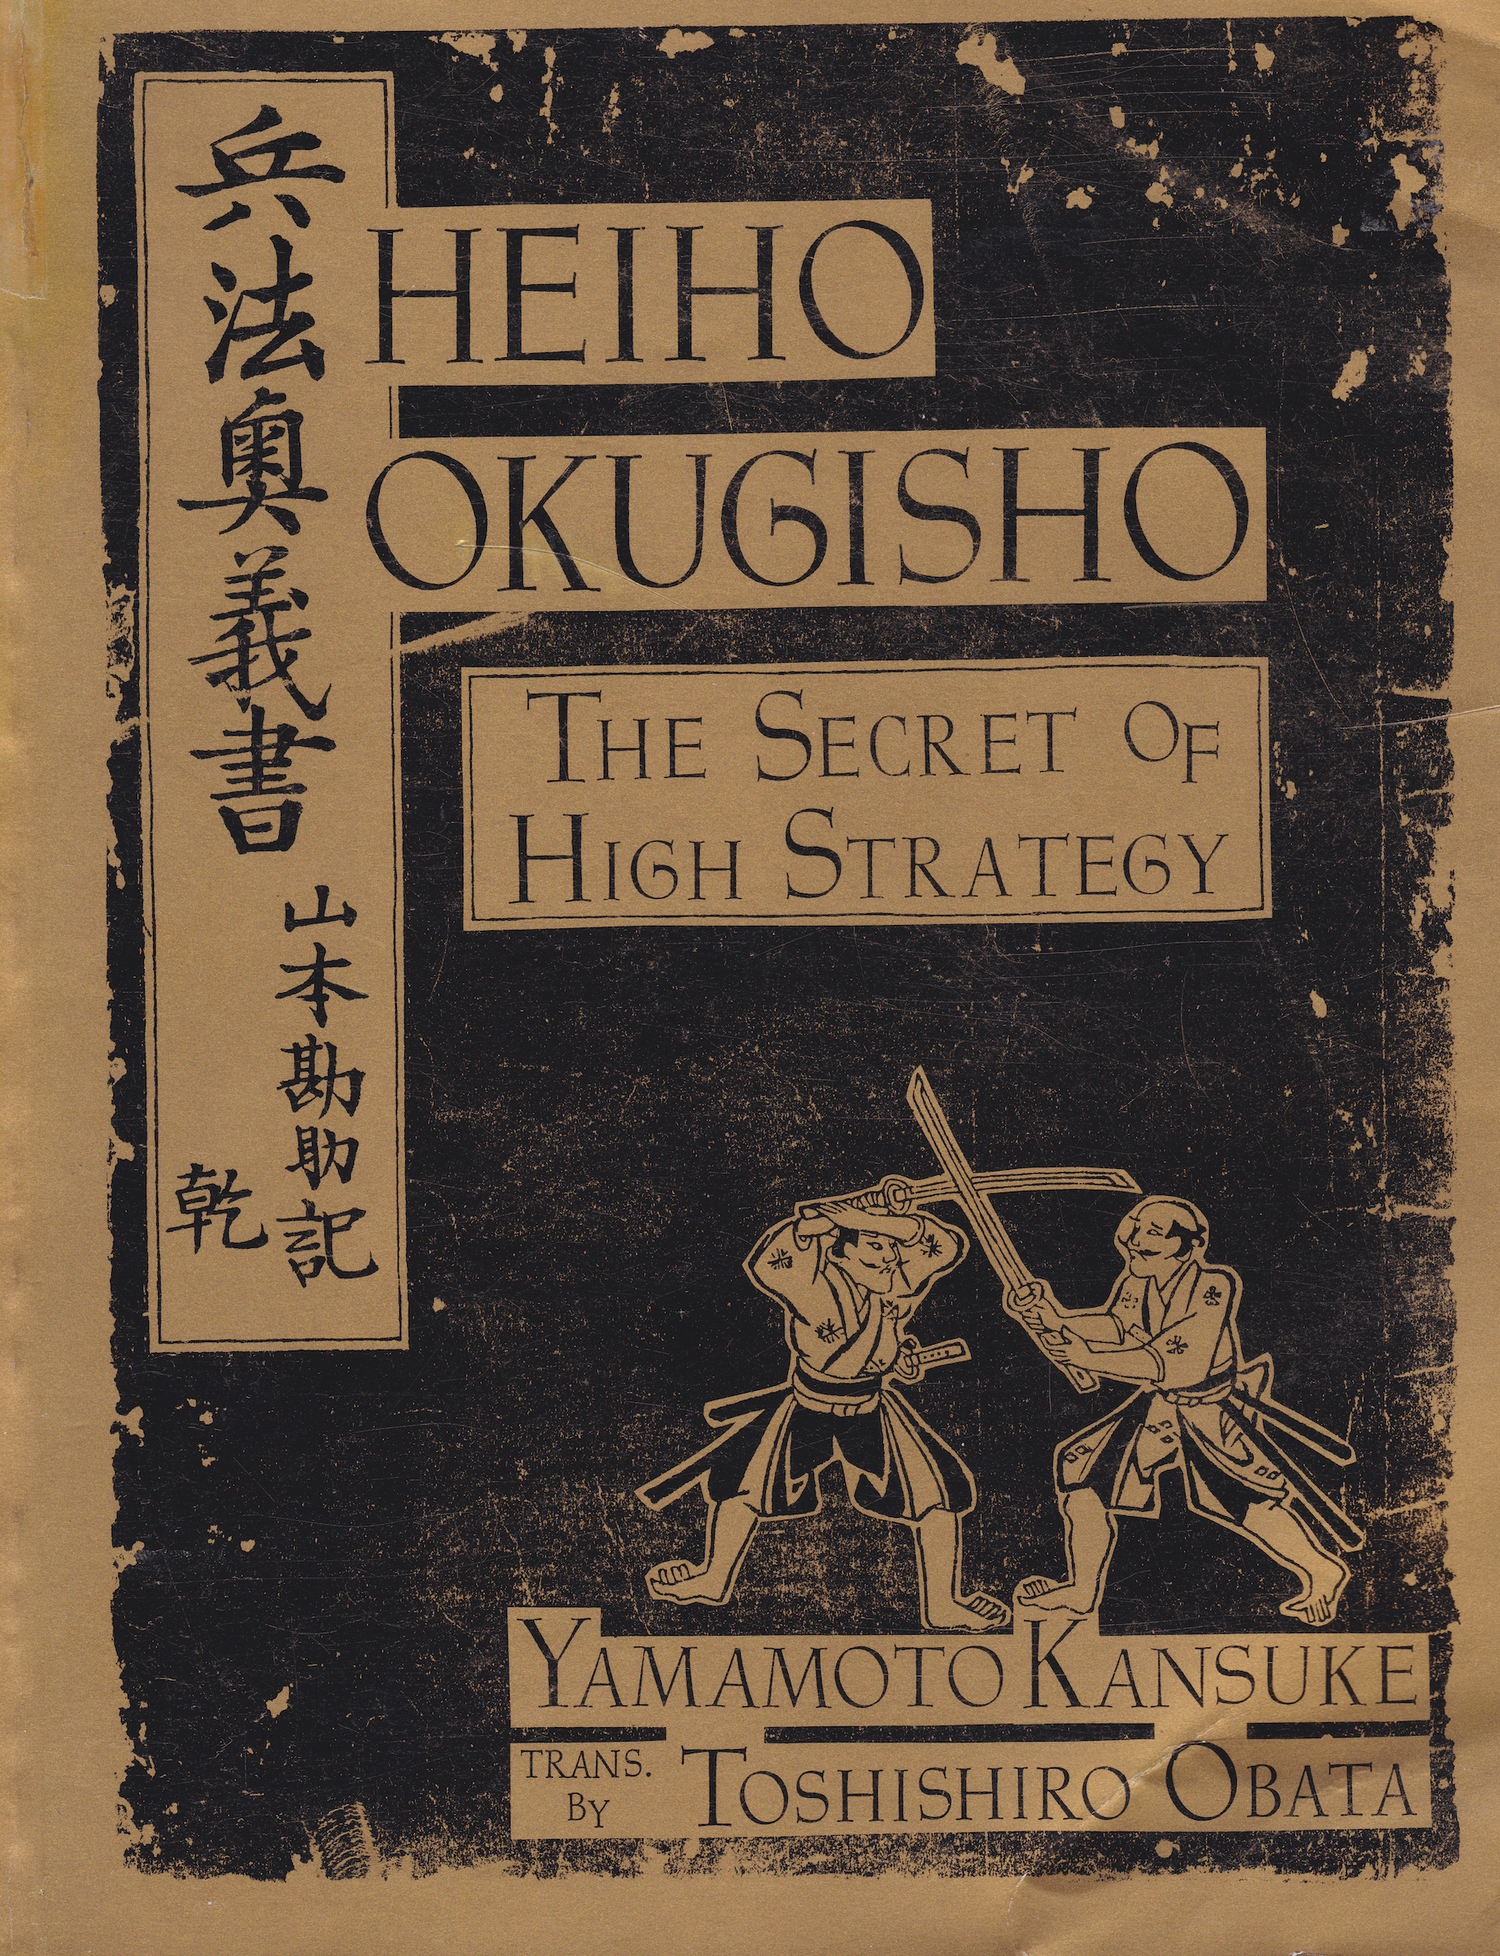 Heiho Okugisho: The Secret of High Strategy Book by Kansuke Yamamoto & Translated by Toshishiro Obata (Preowned)